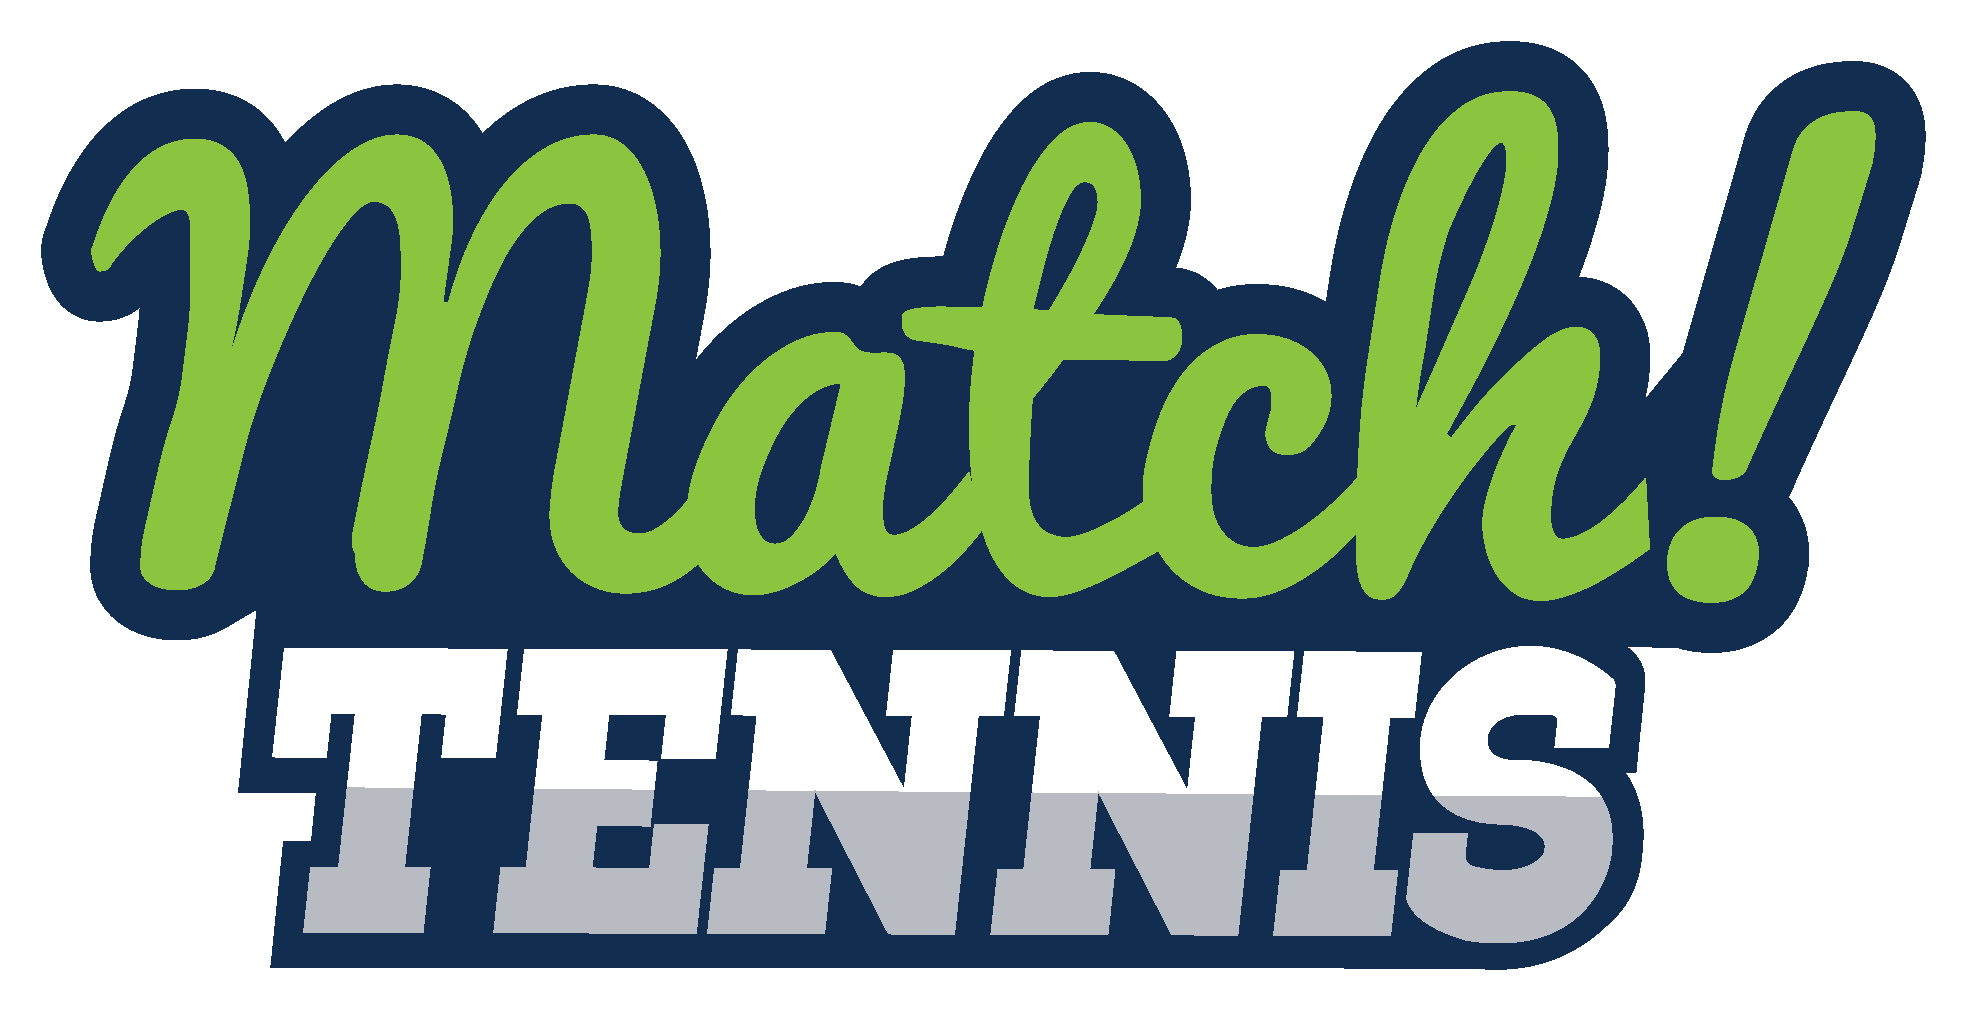 match_tennis_text_logo3.png